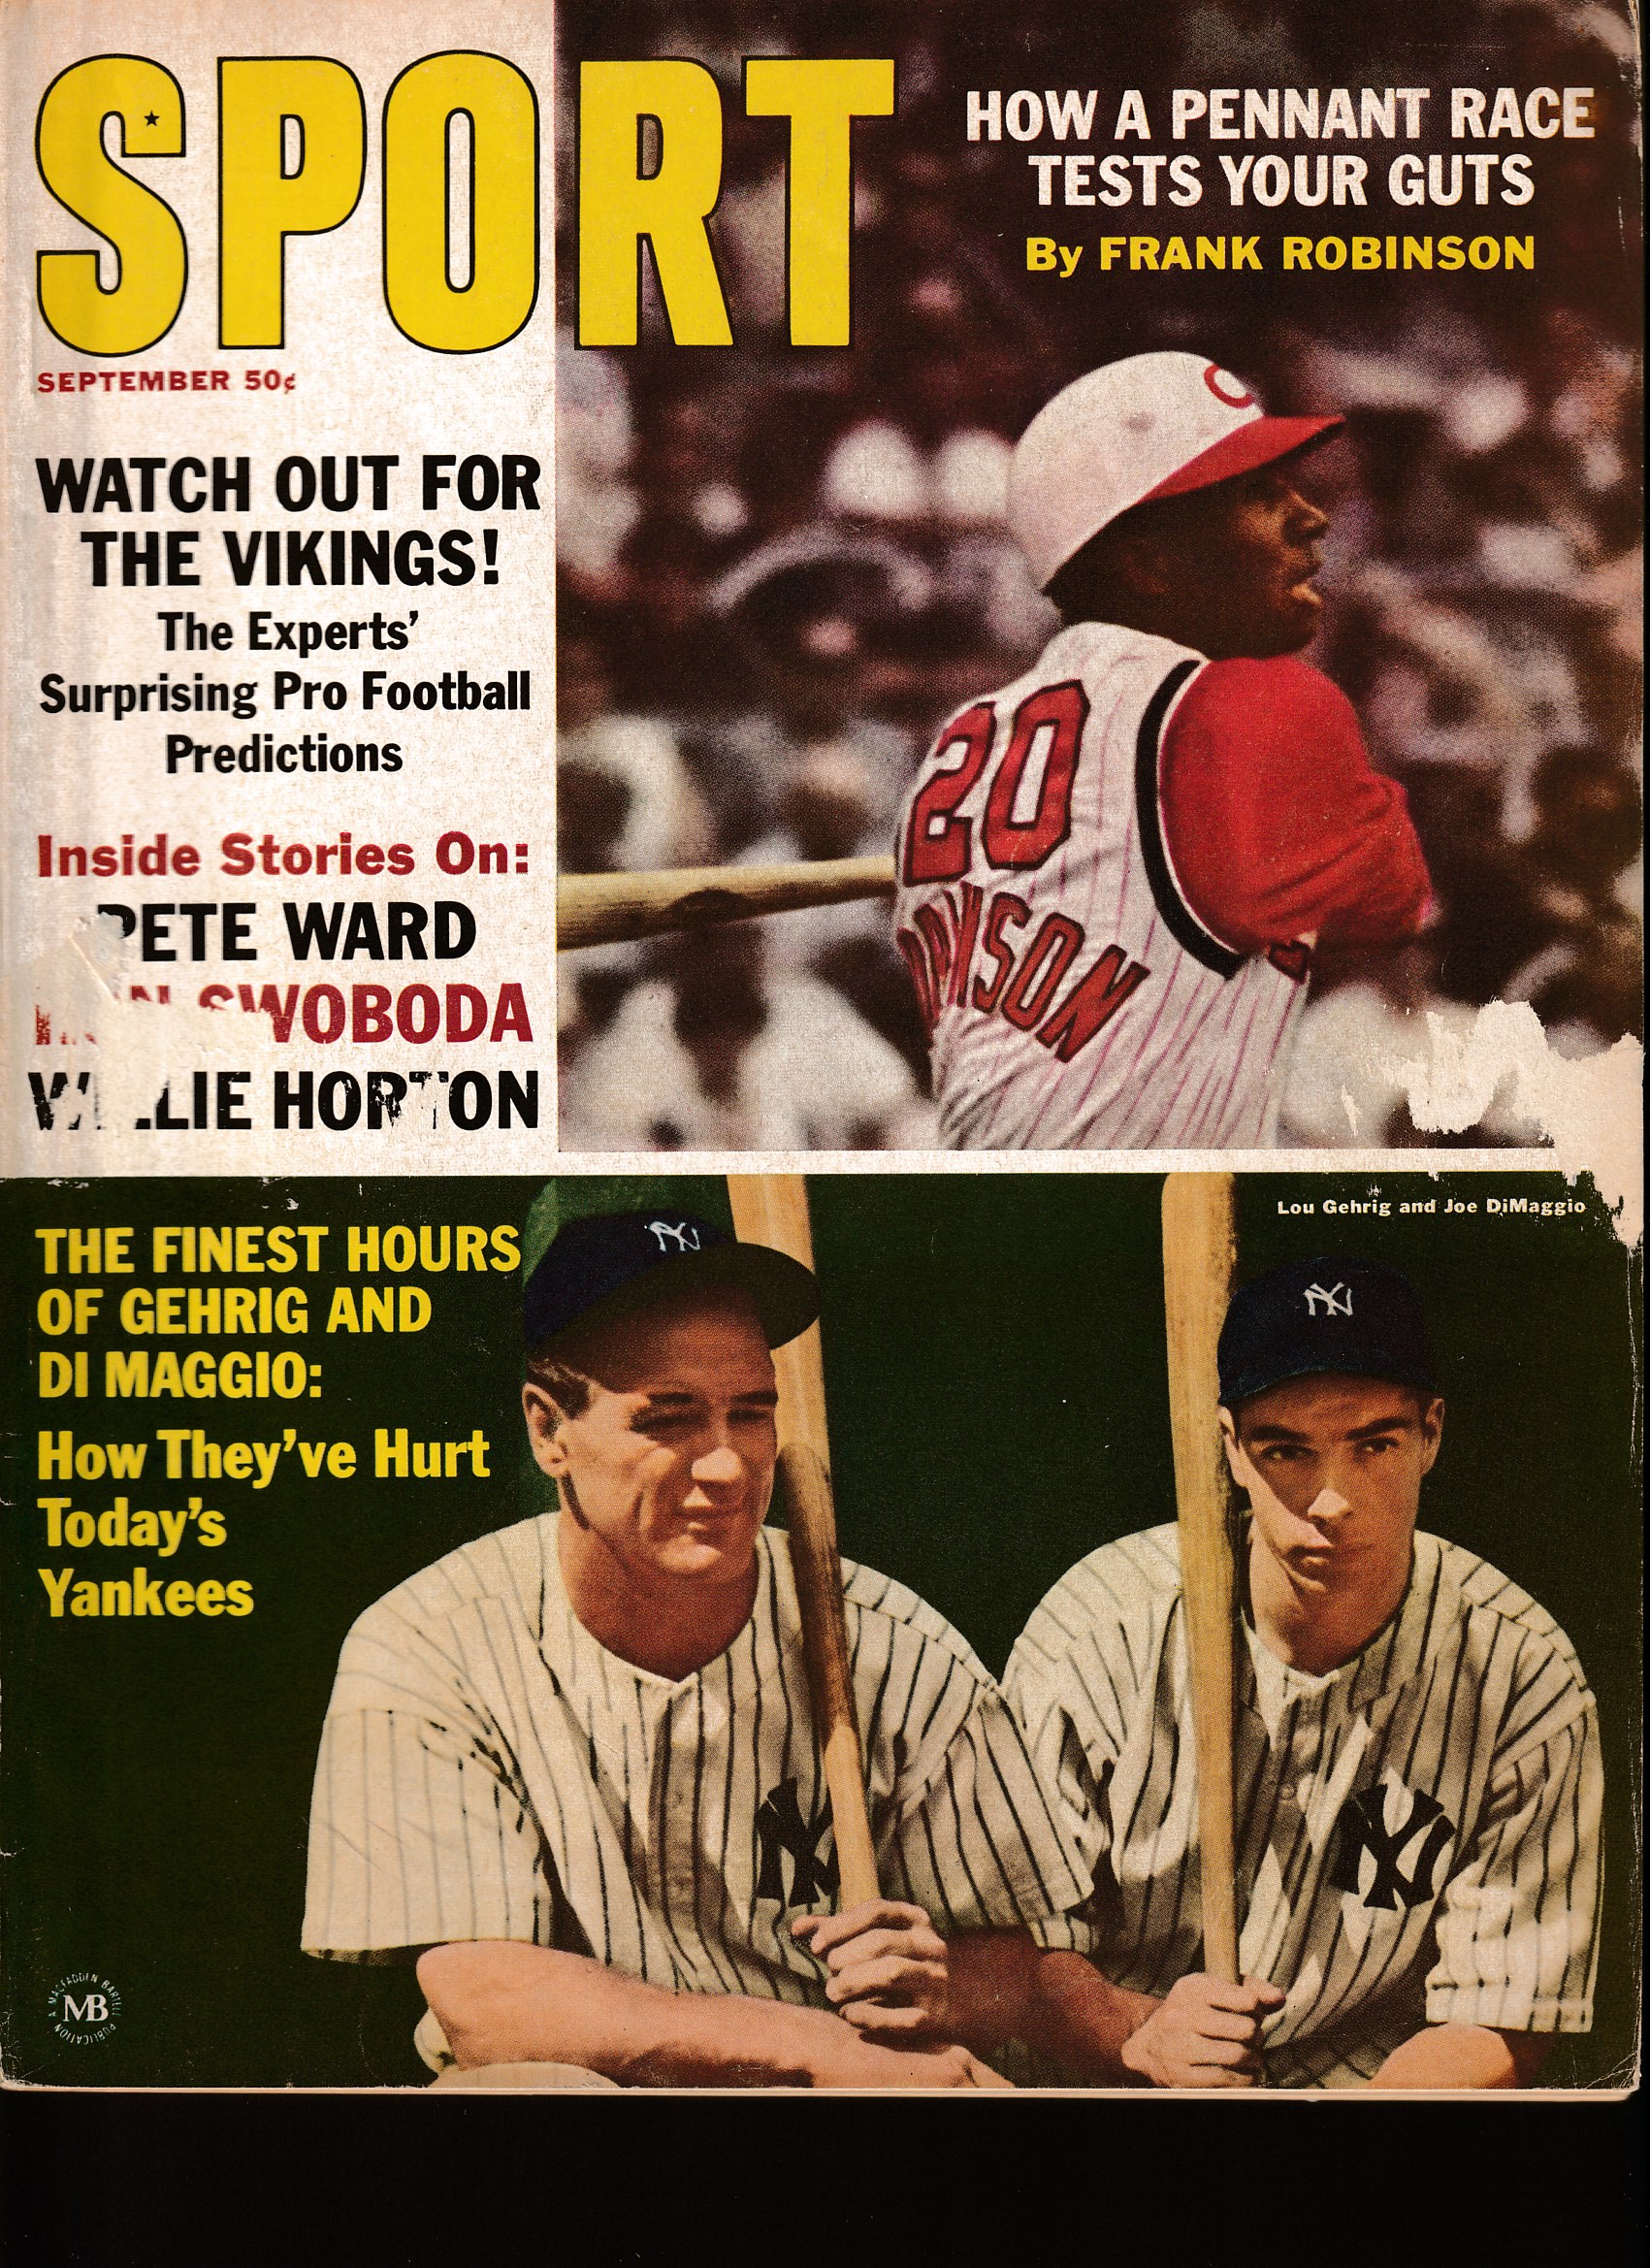  SPORT - 1965 09/Sept - Joe DiMaggio/Lou Gehrig cover Baseball cards value